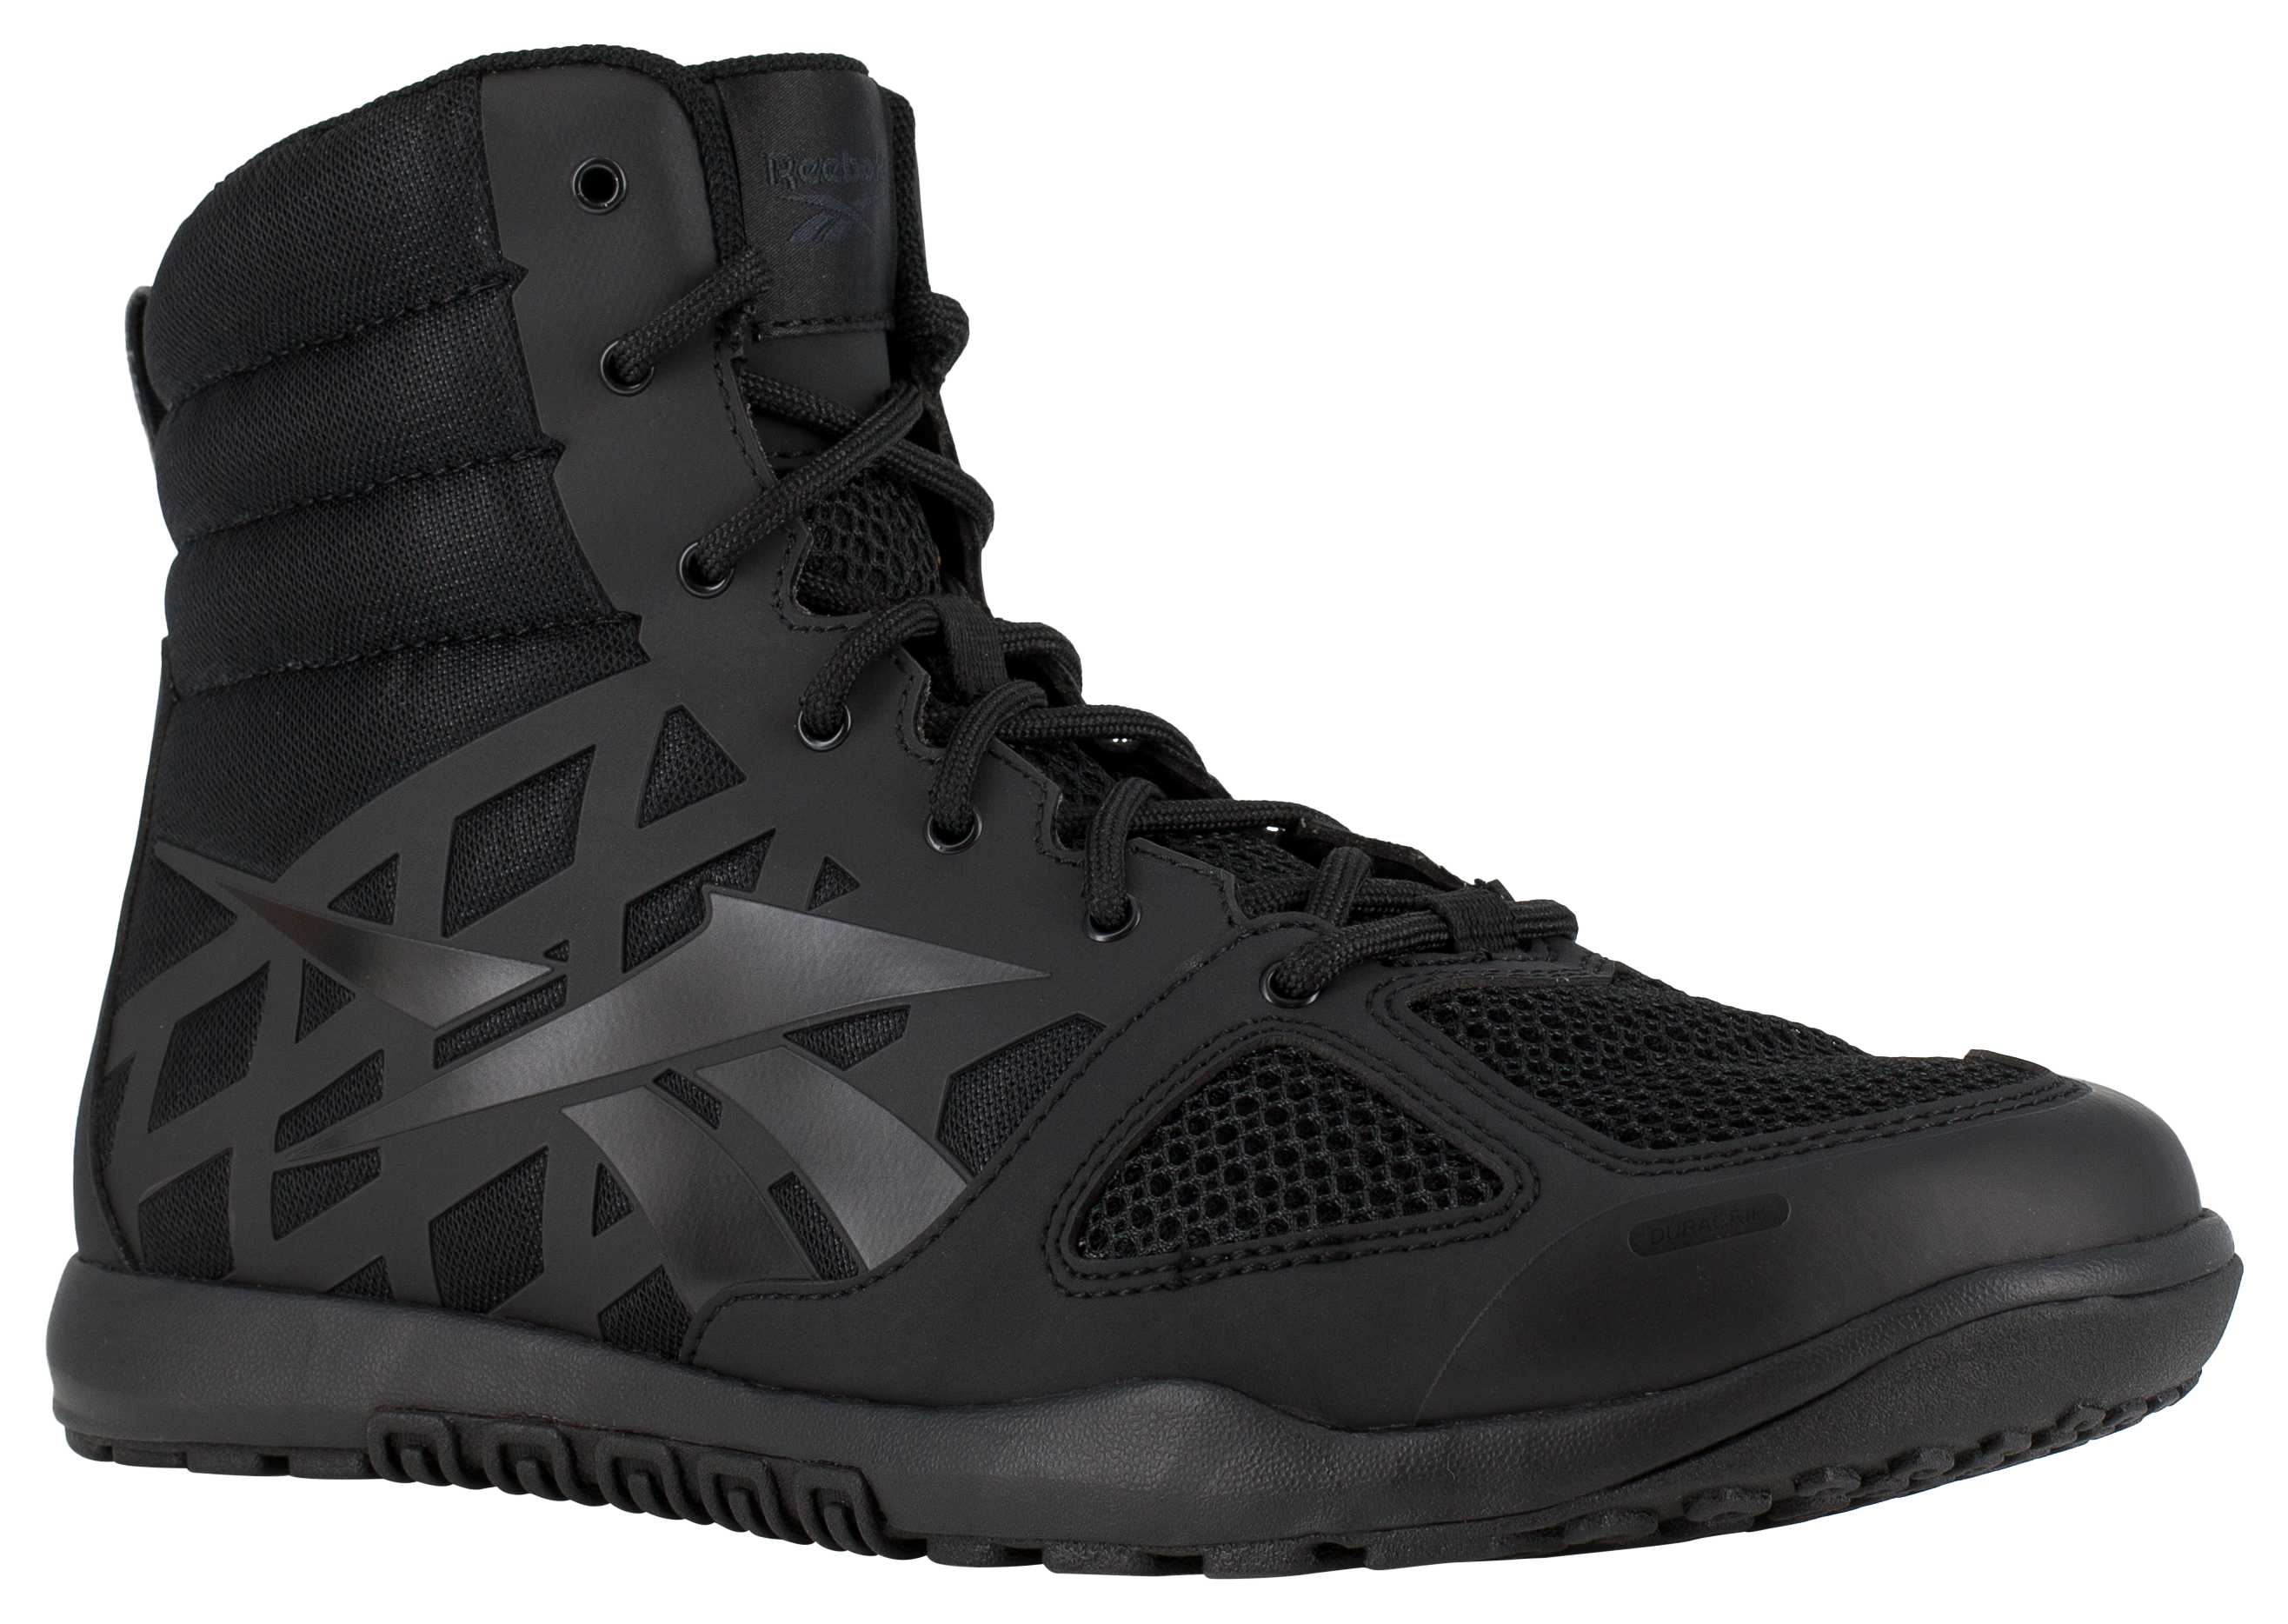 Reebok Nano Tactical 6″ Tactical Boots for Men - Black - 7.5M